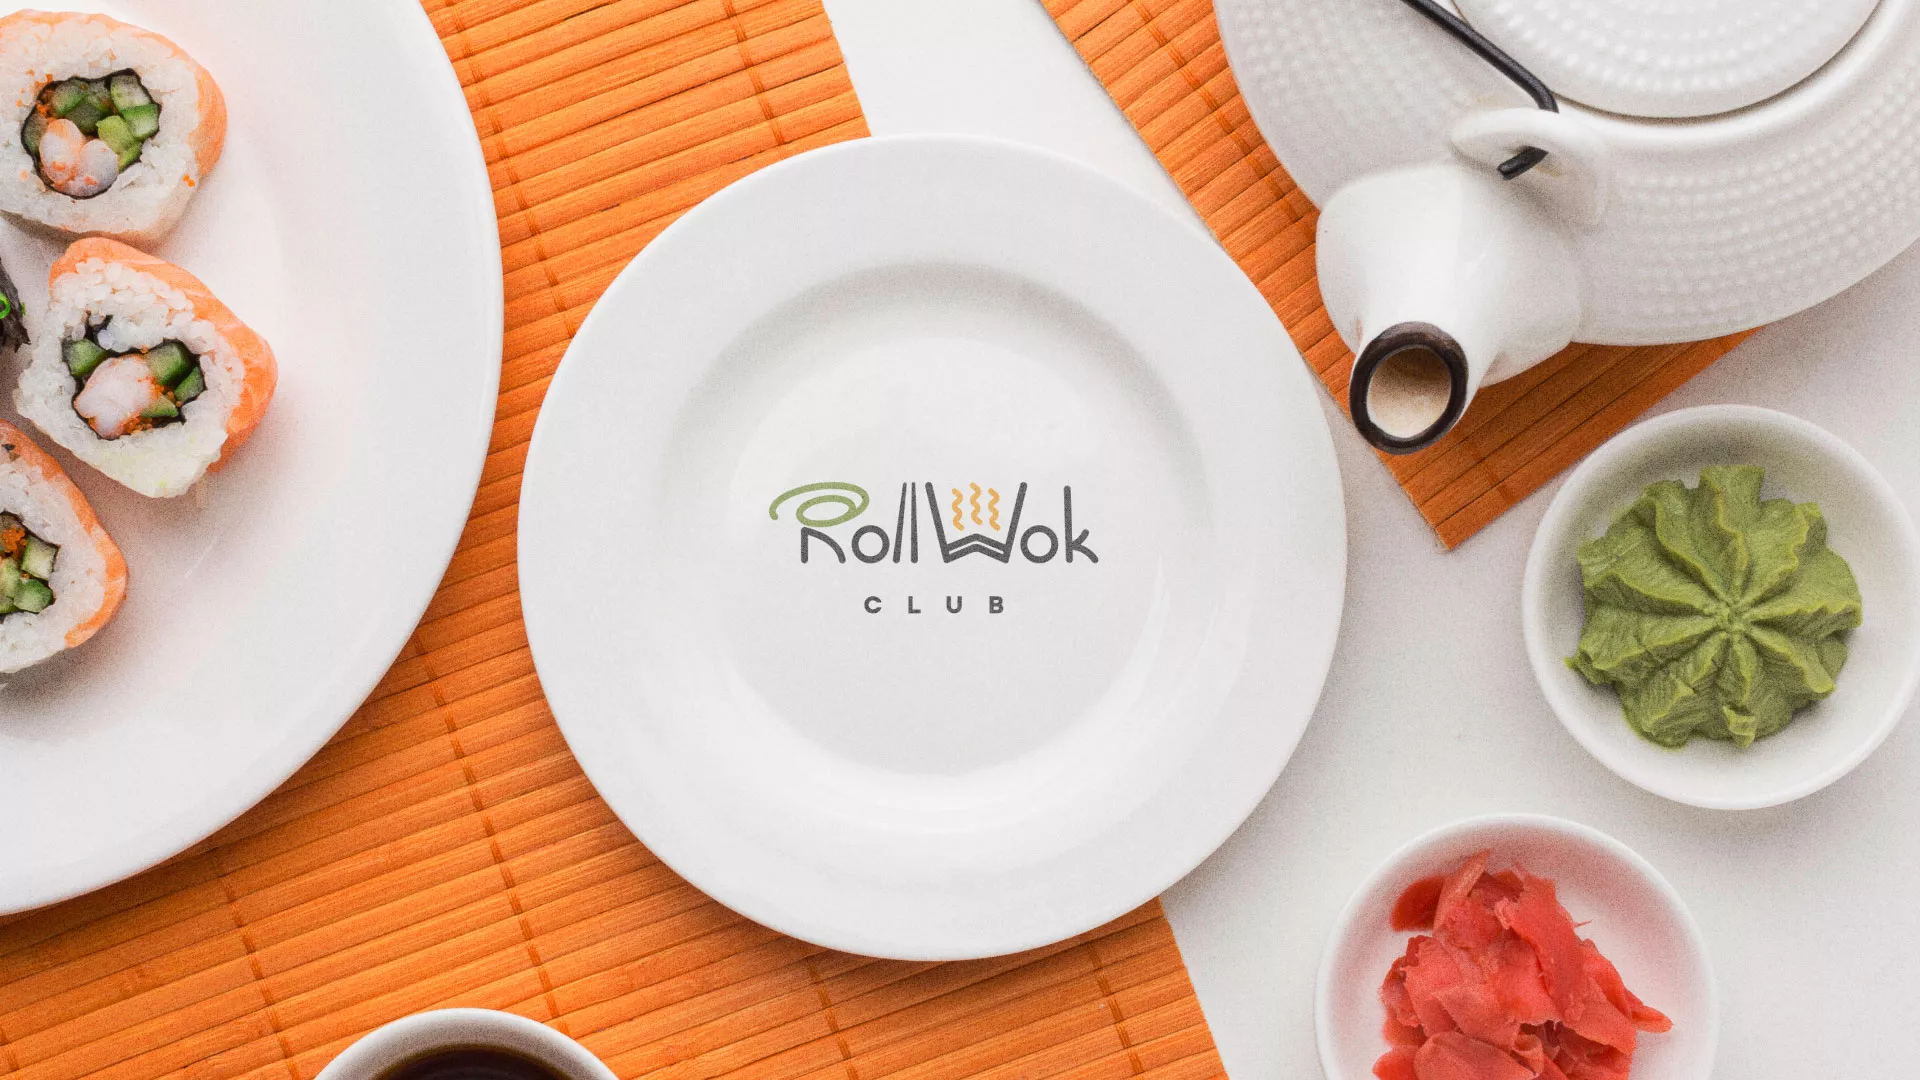 Разработка логотипа и фирменного стиля суши-бара «Roll Wok Club» в Чайковском